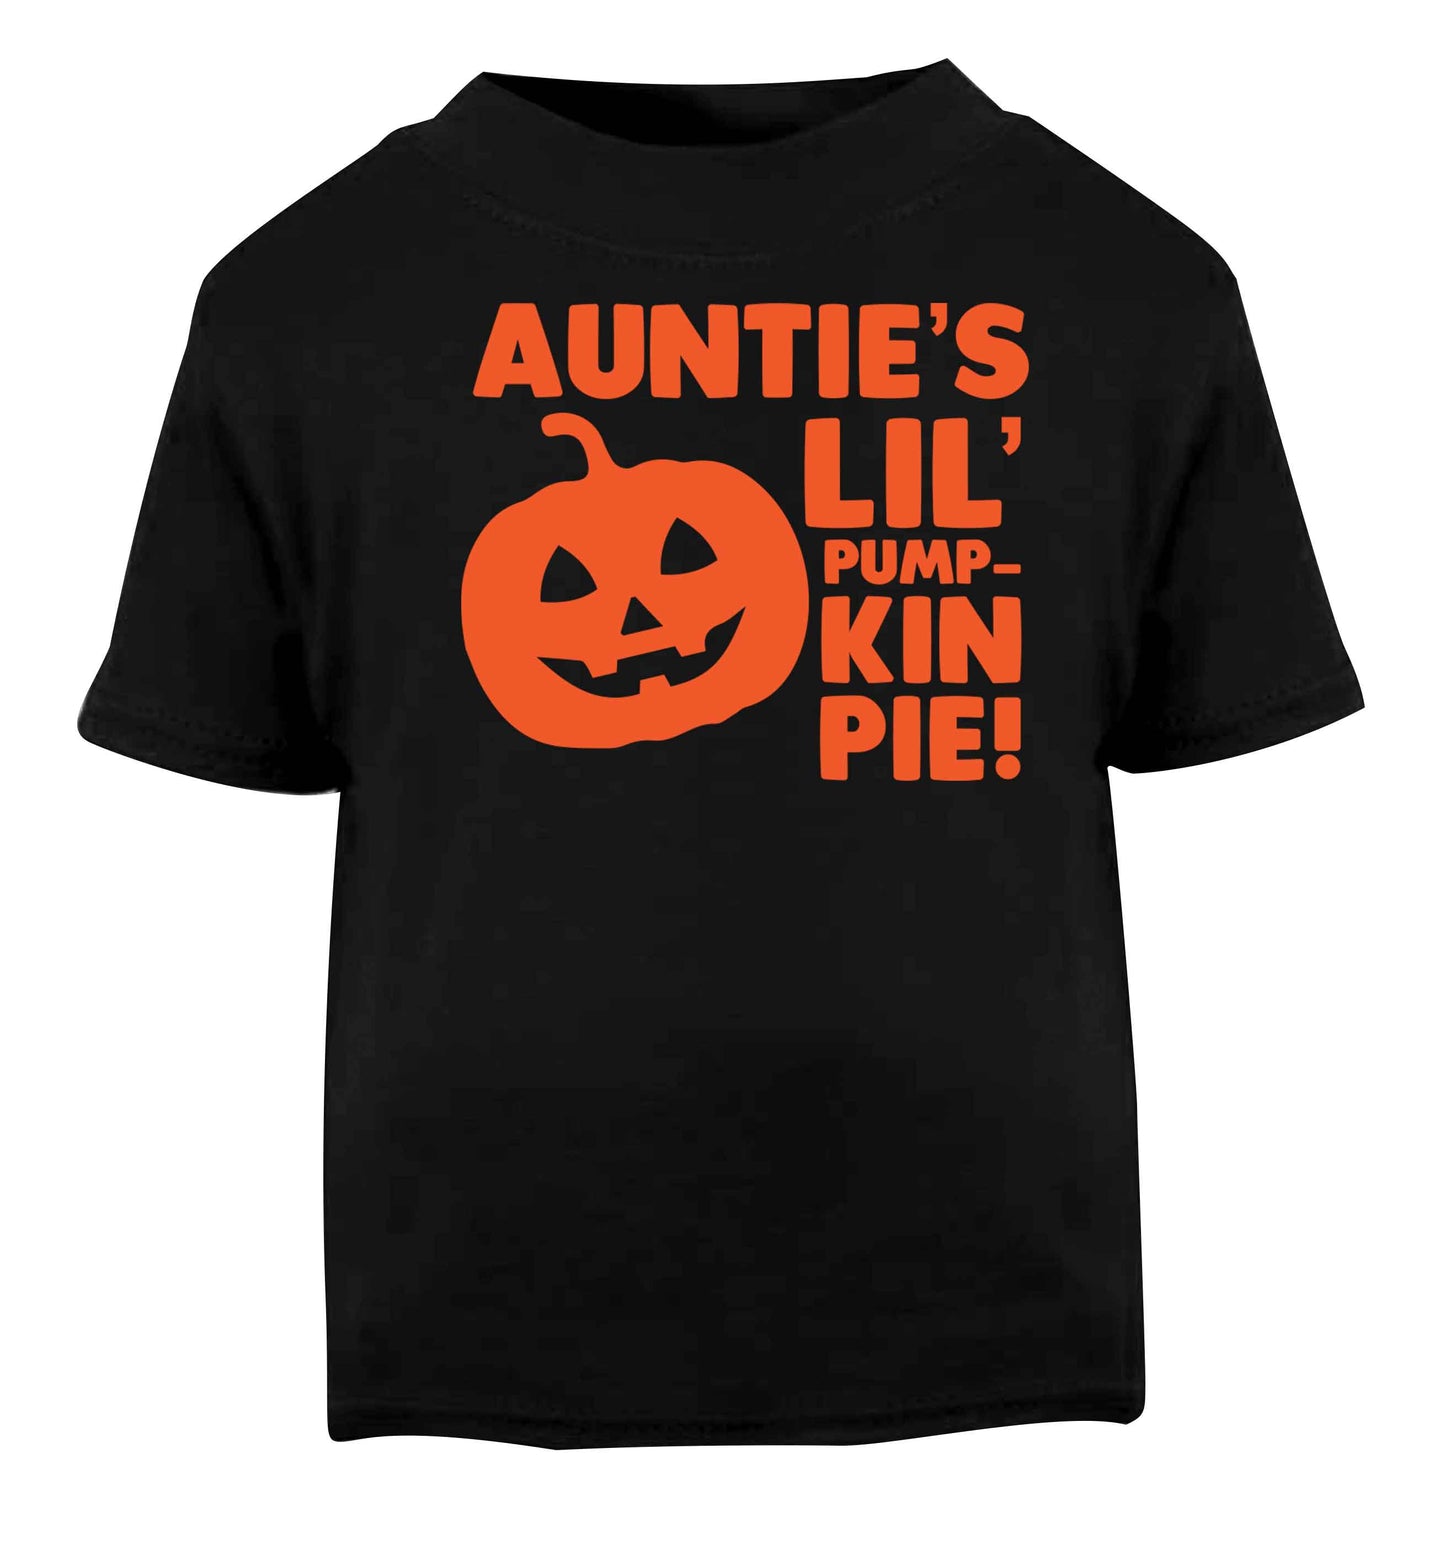 Auntie's lil' pumpkin pie Black baby toddler Tshirt 2 years